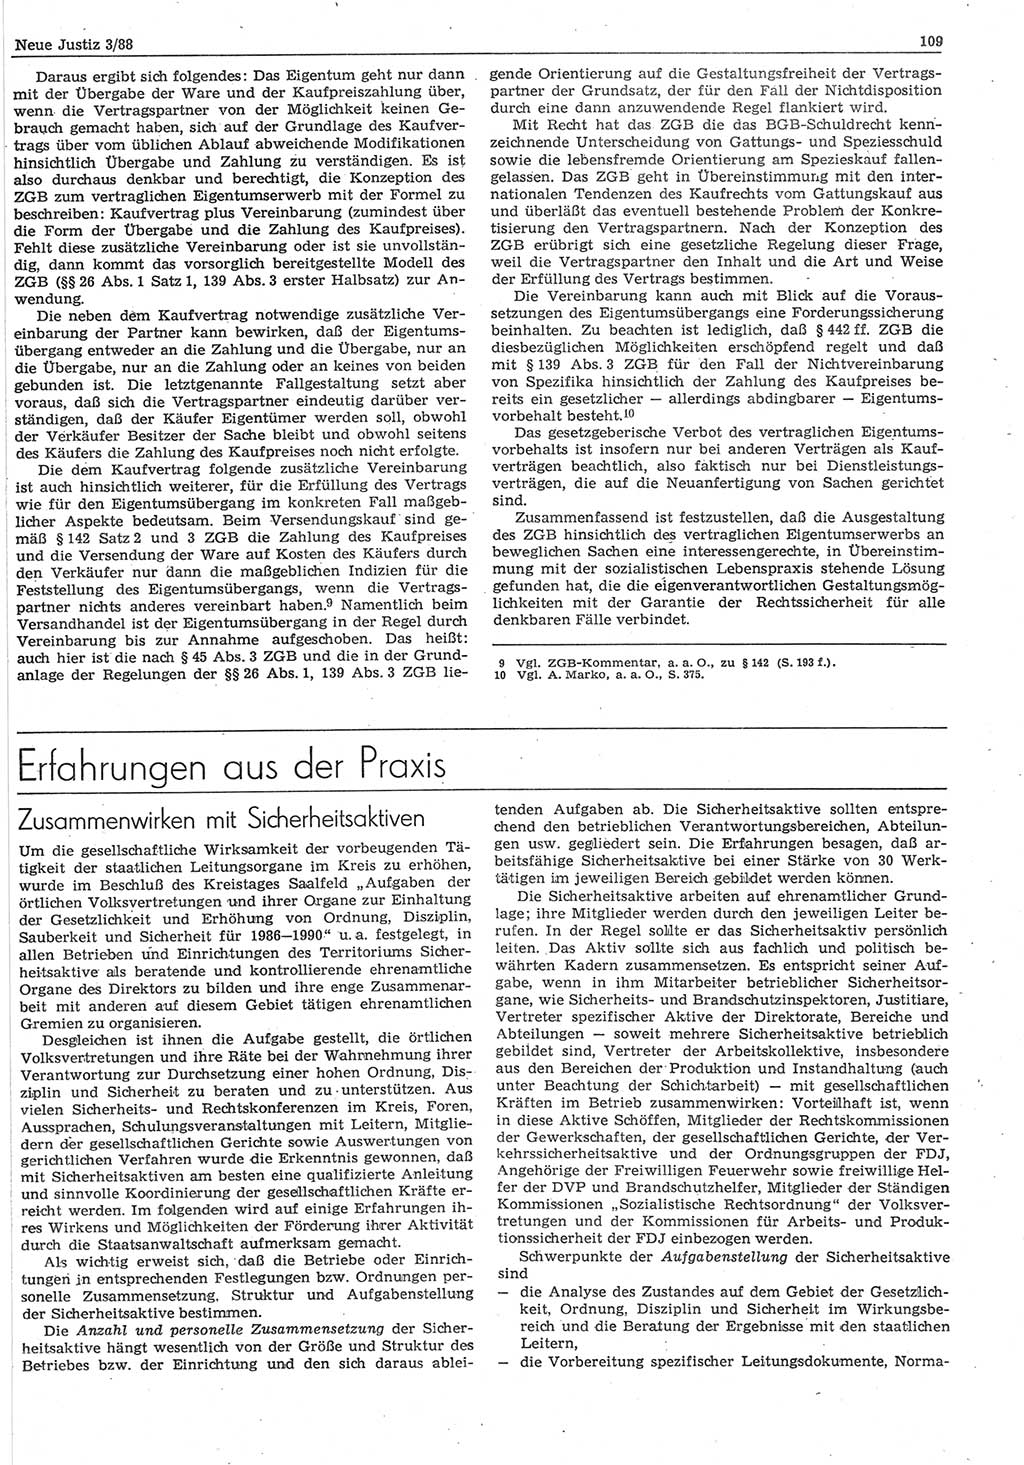 Neue Justiz (NJ), Zeitschrift für sozialistisches Recht und Gesetzlichkeit [Deutsche Demokratische Republik (DDR)], 42. Jahrgang 1988, Seite 109 (NJ DDR 1988, S. 109)